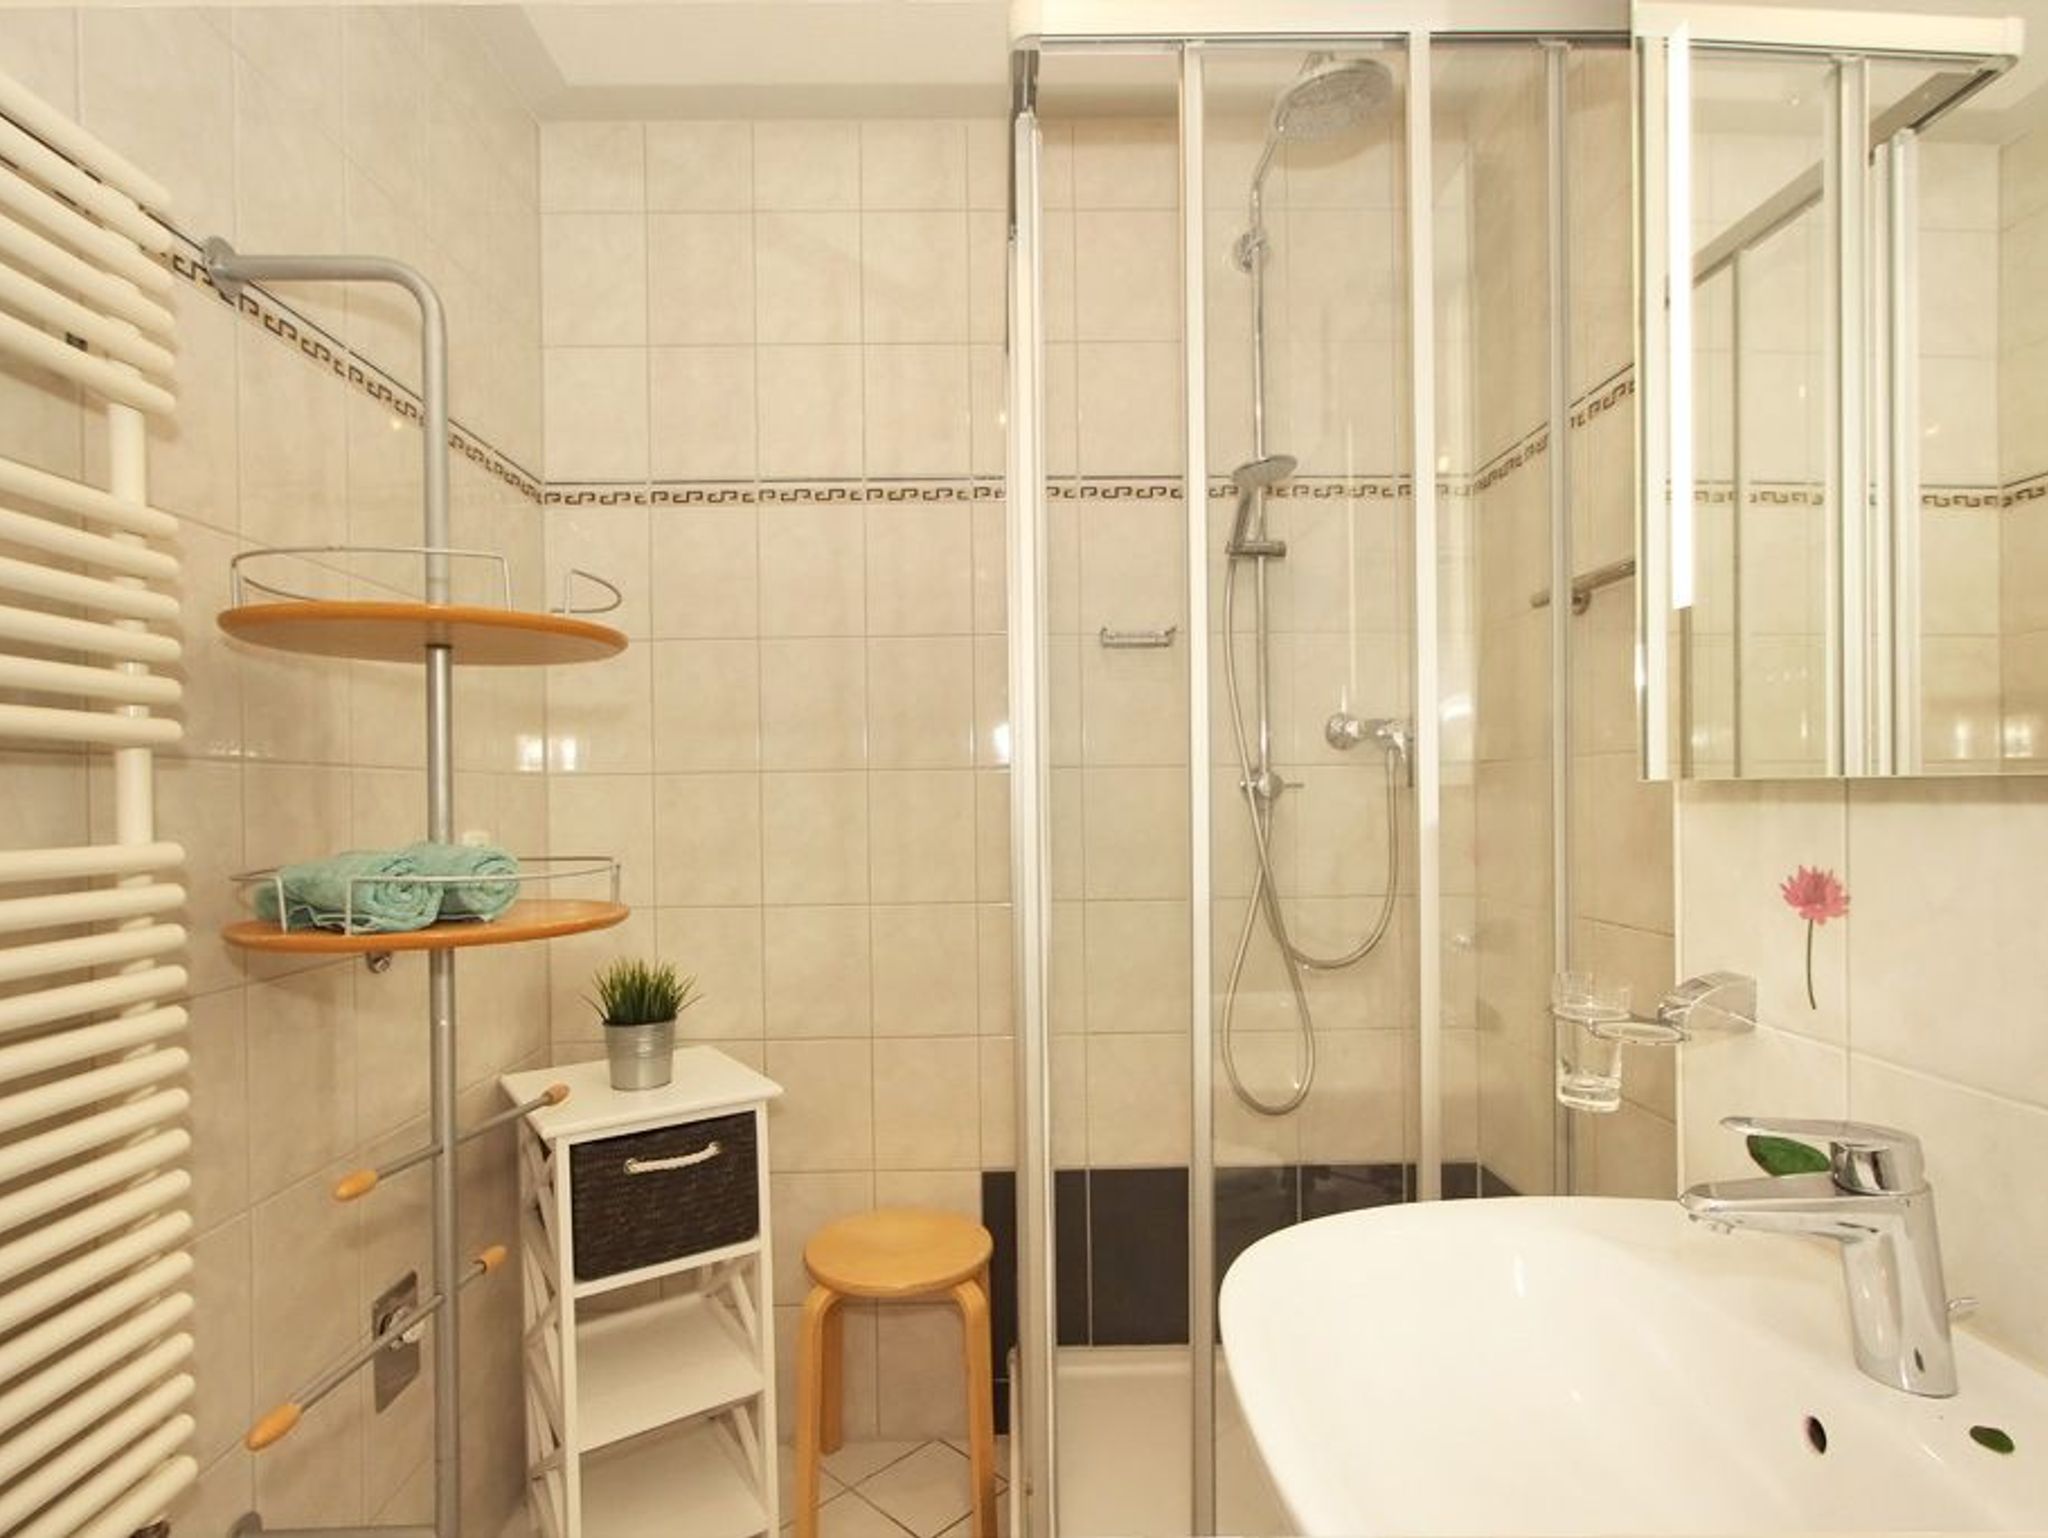 Bad Dusche, Waschbecken und Handtuchheizung